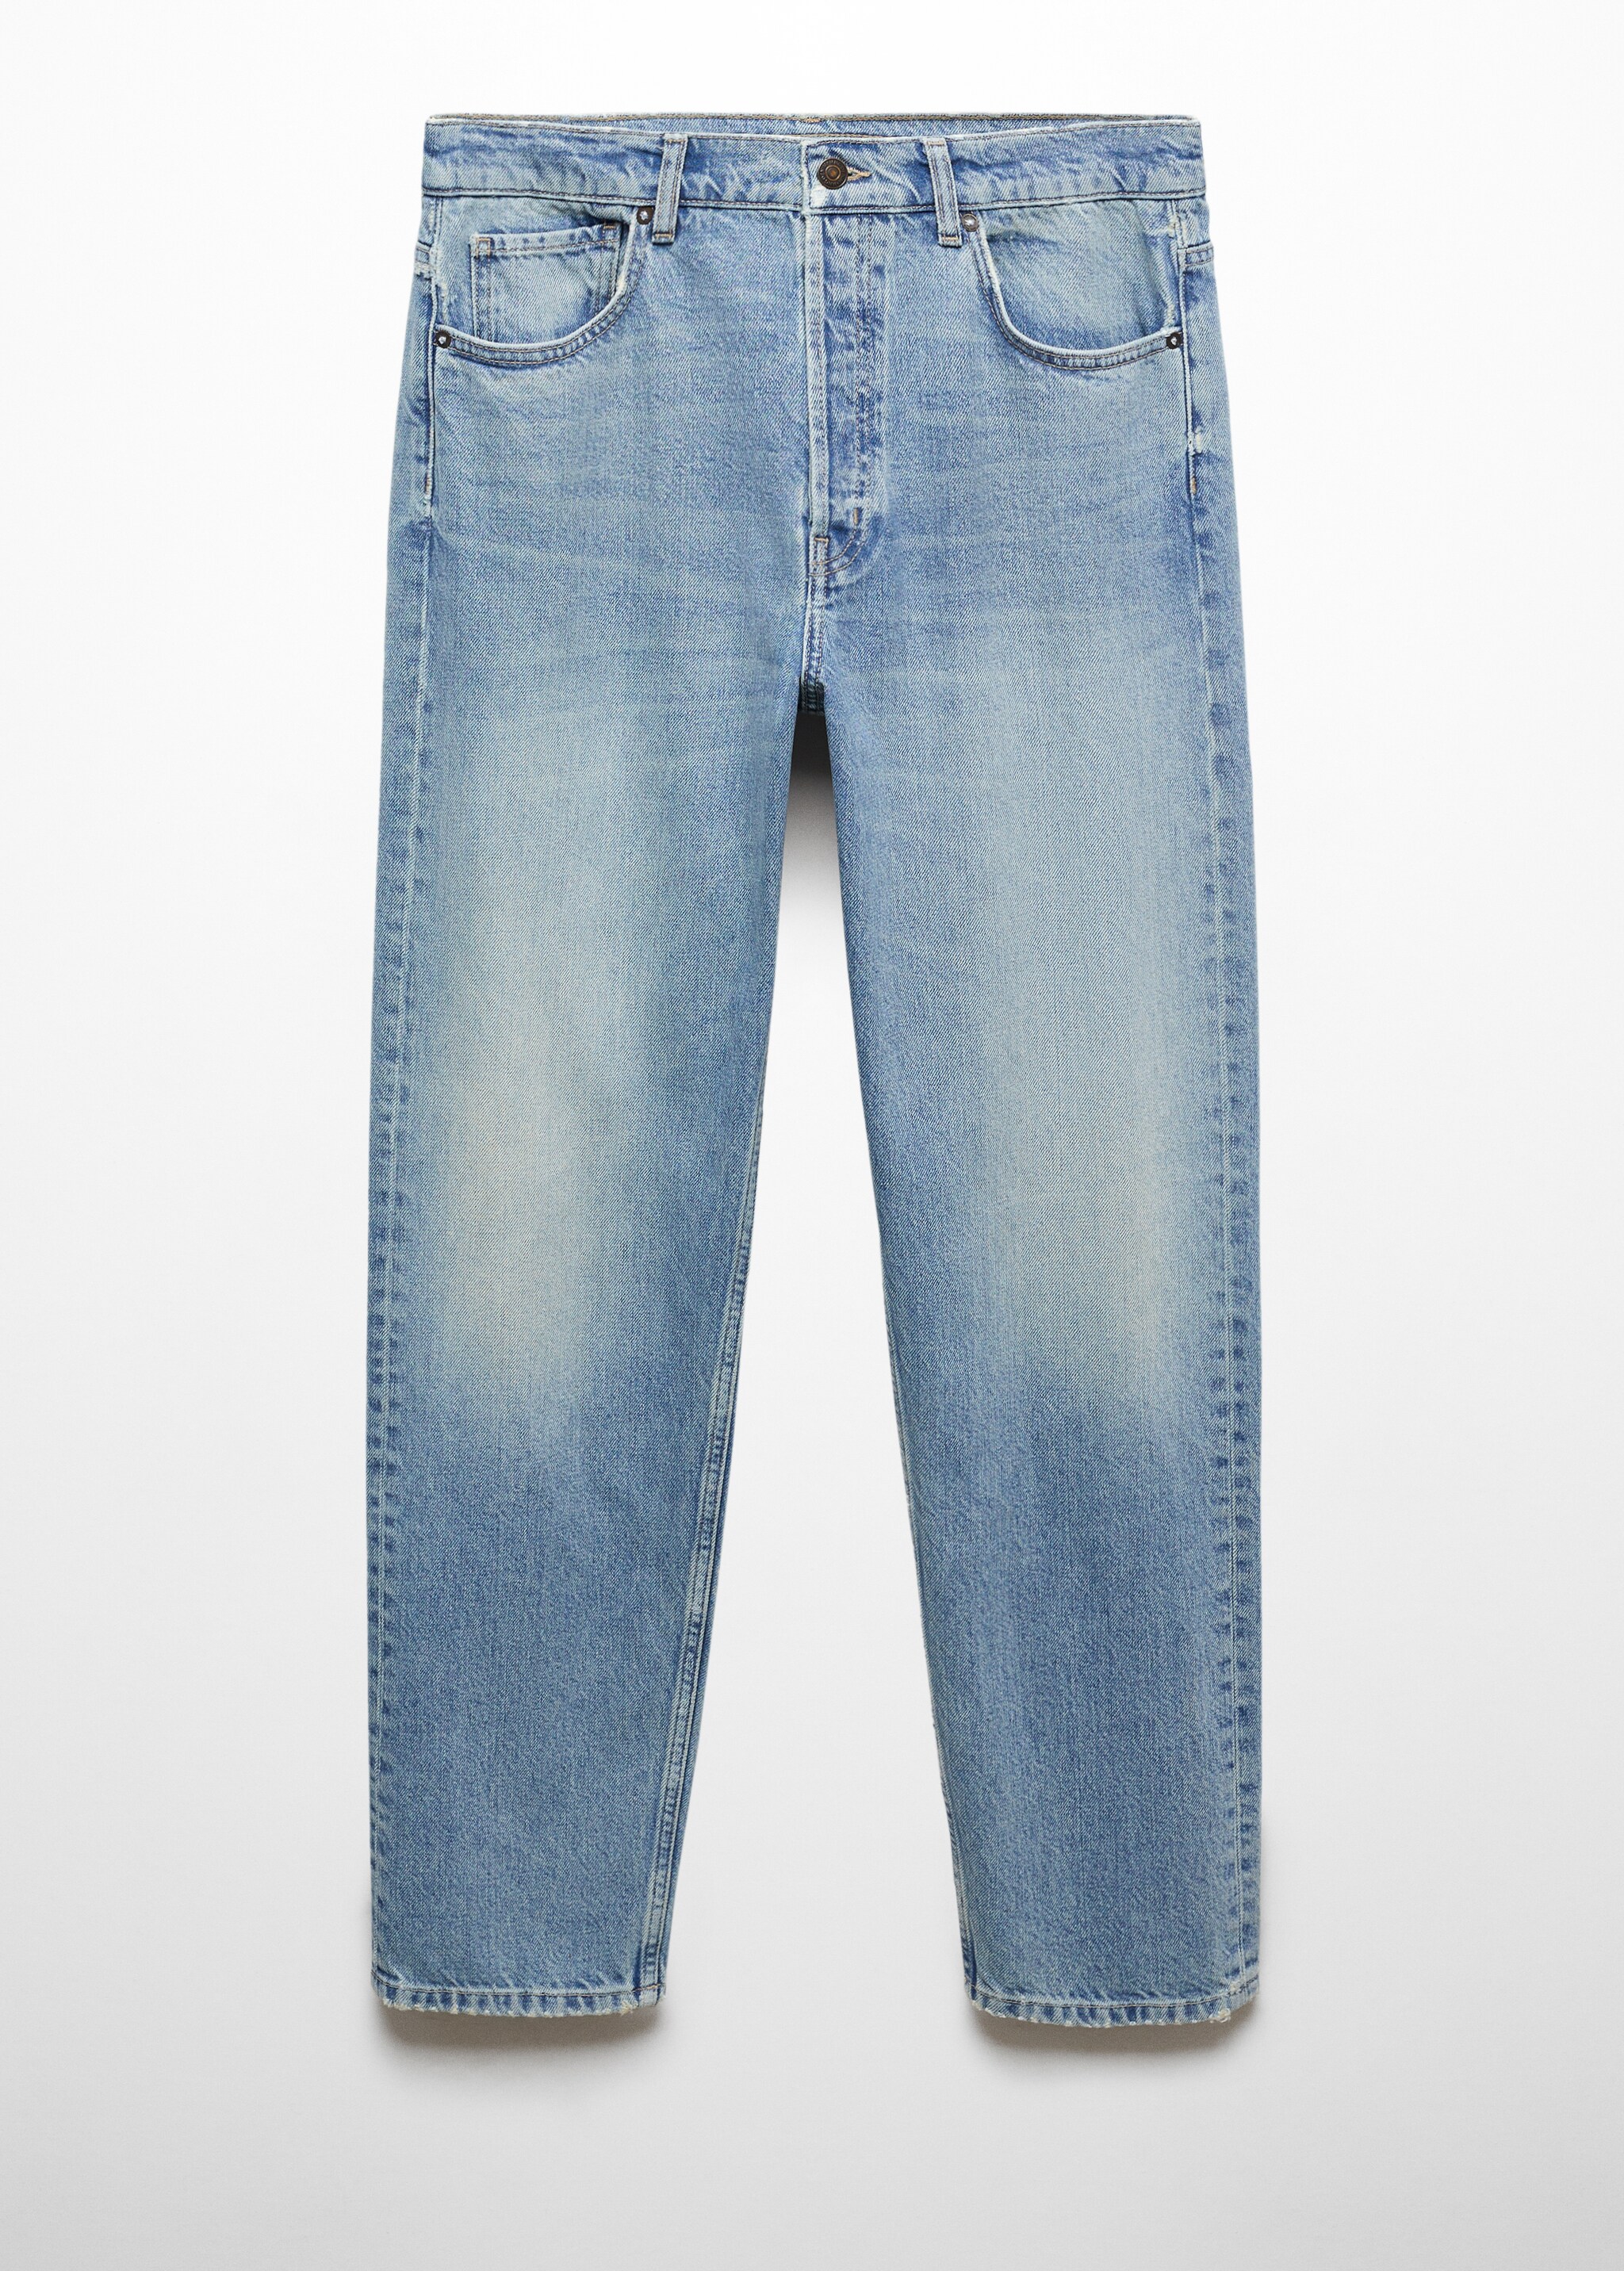 Jeans relaxed fit lavado medio - Artículo sin modelo